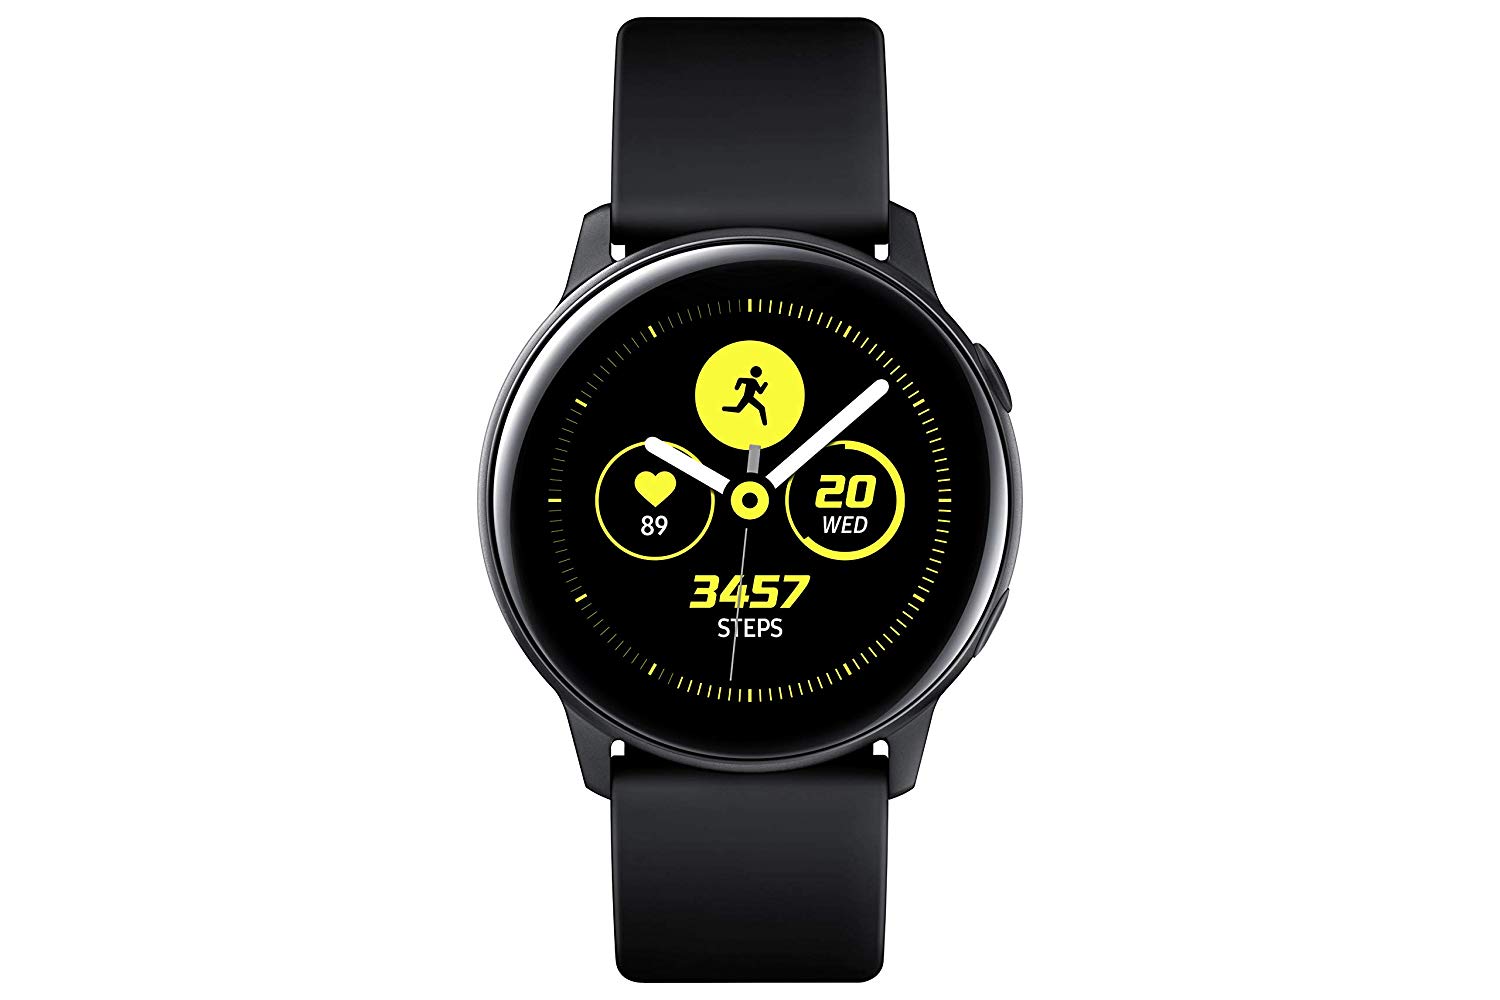 SAMSUNG Galaxy Watch Active Bluetooth Smart Watch (40mm) Black  SM-R500NZKAXAR